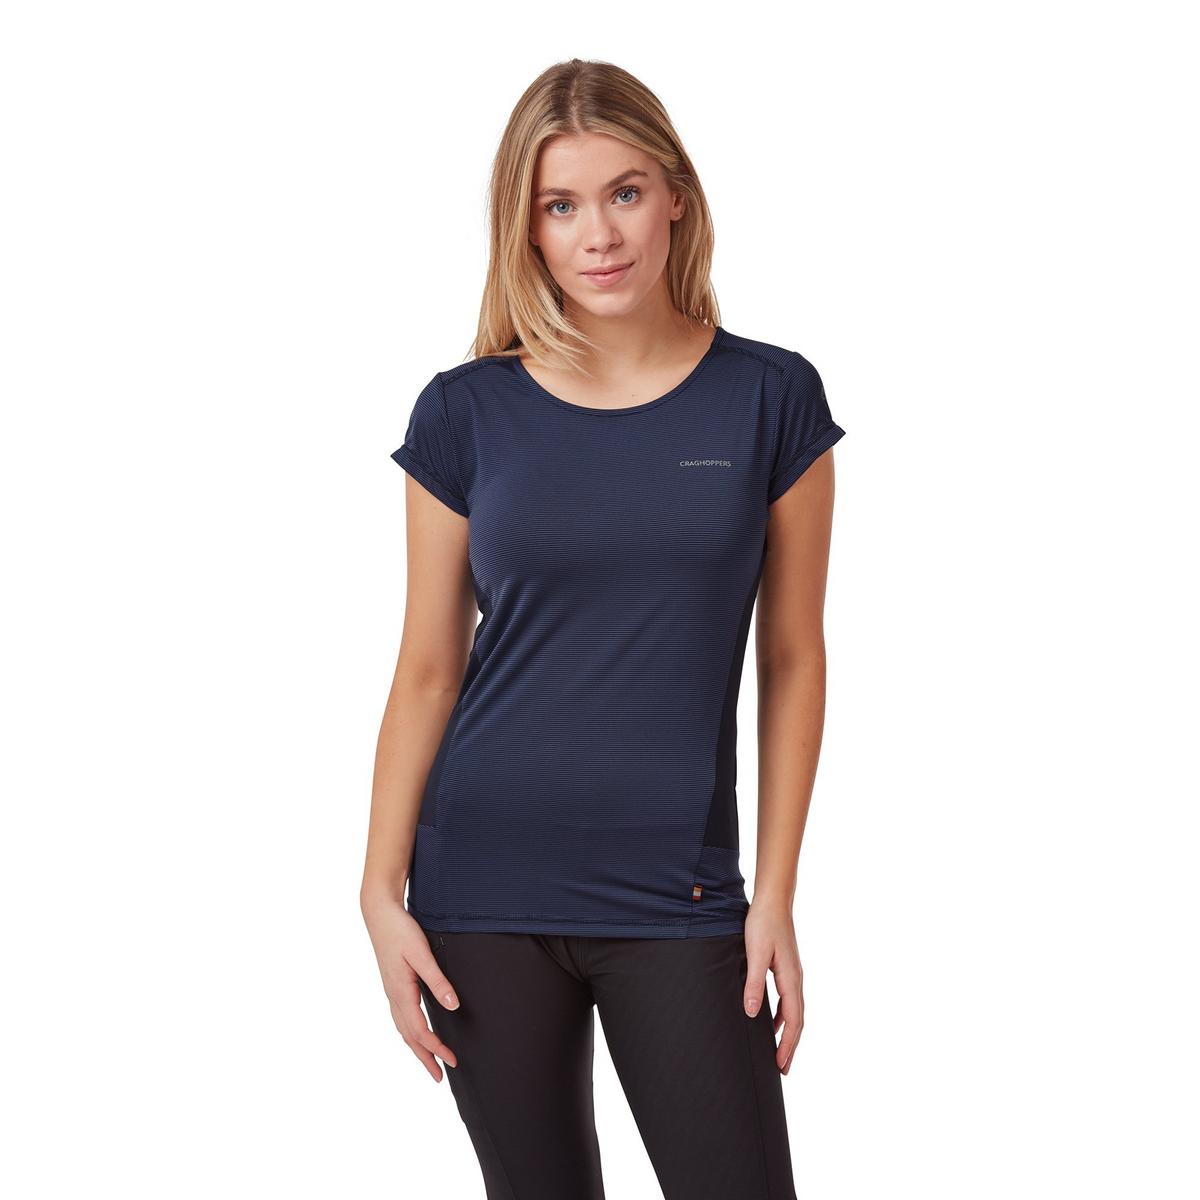 Craghoppers Women's Atmos Short Sleeve T-Shirt - Blue Navy